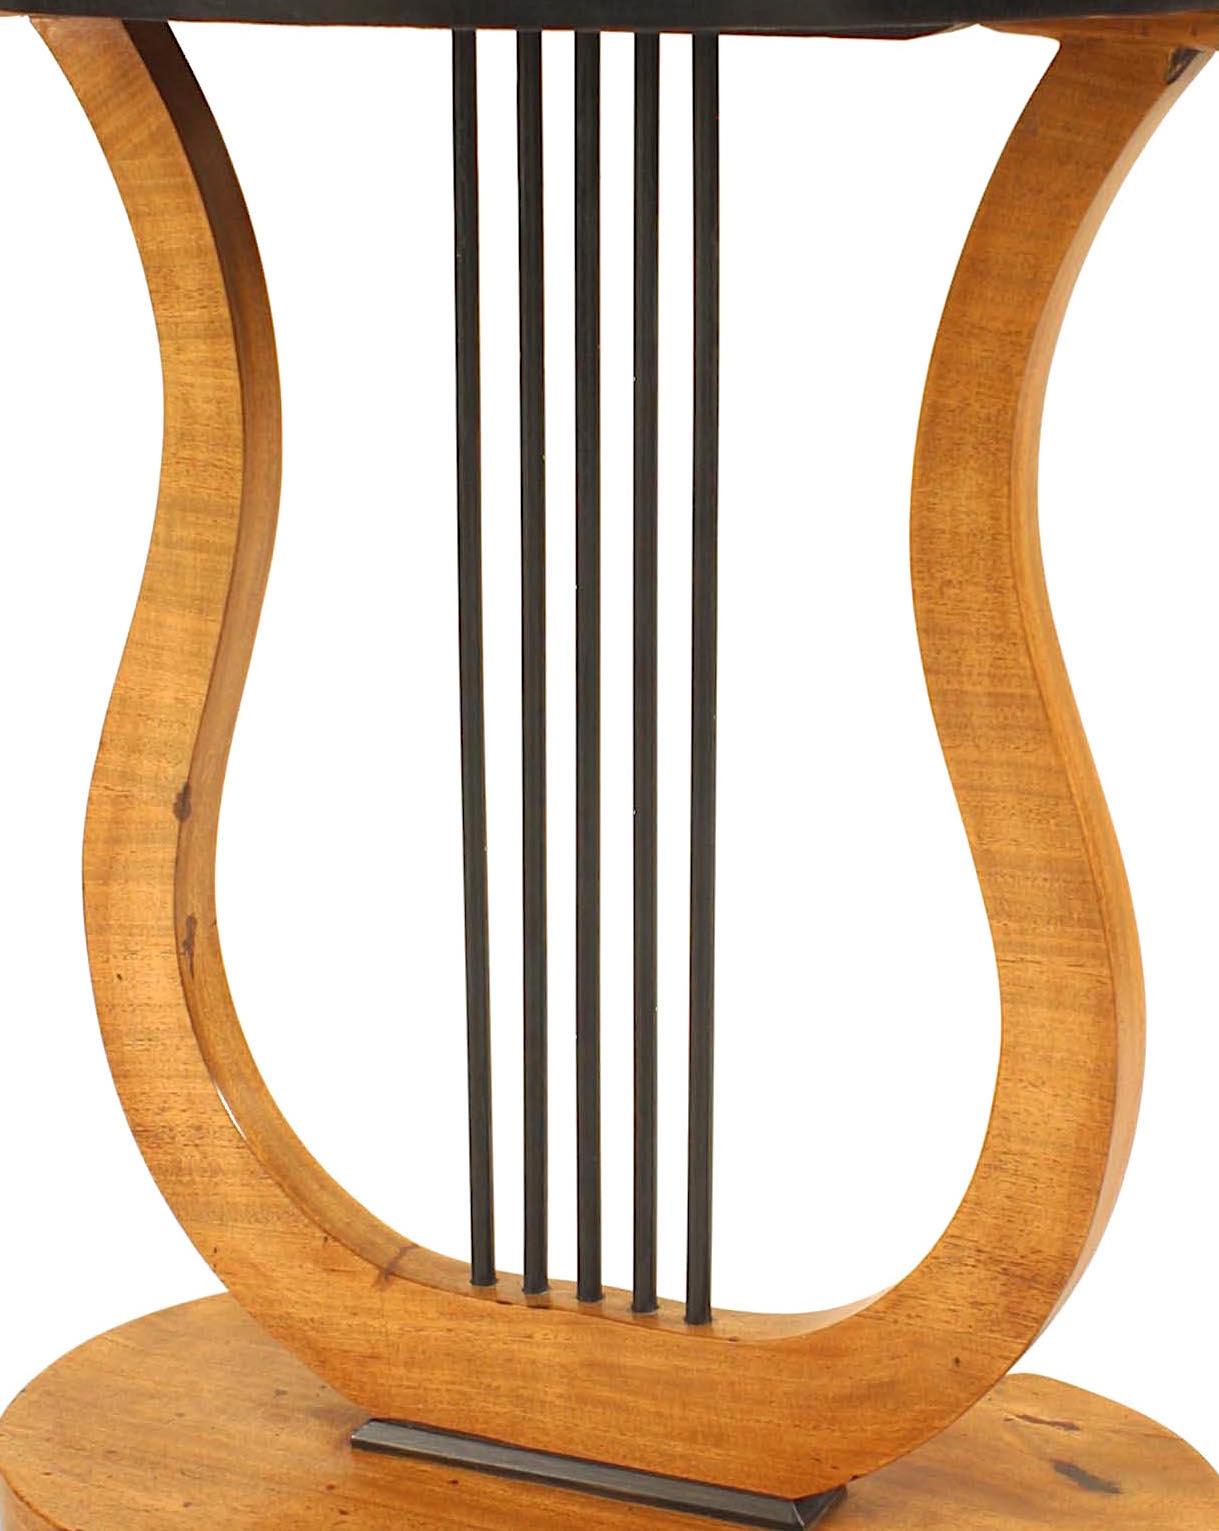 Österreichischer Biedermeier Tisch aus Ahorn und Ebenholz mit einer ovalen Platte, die von einer Lyra Form getragen wird, auf einem ovalen Sockel, der auf 4 kleinen Kugelfüßen ruht.
